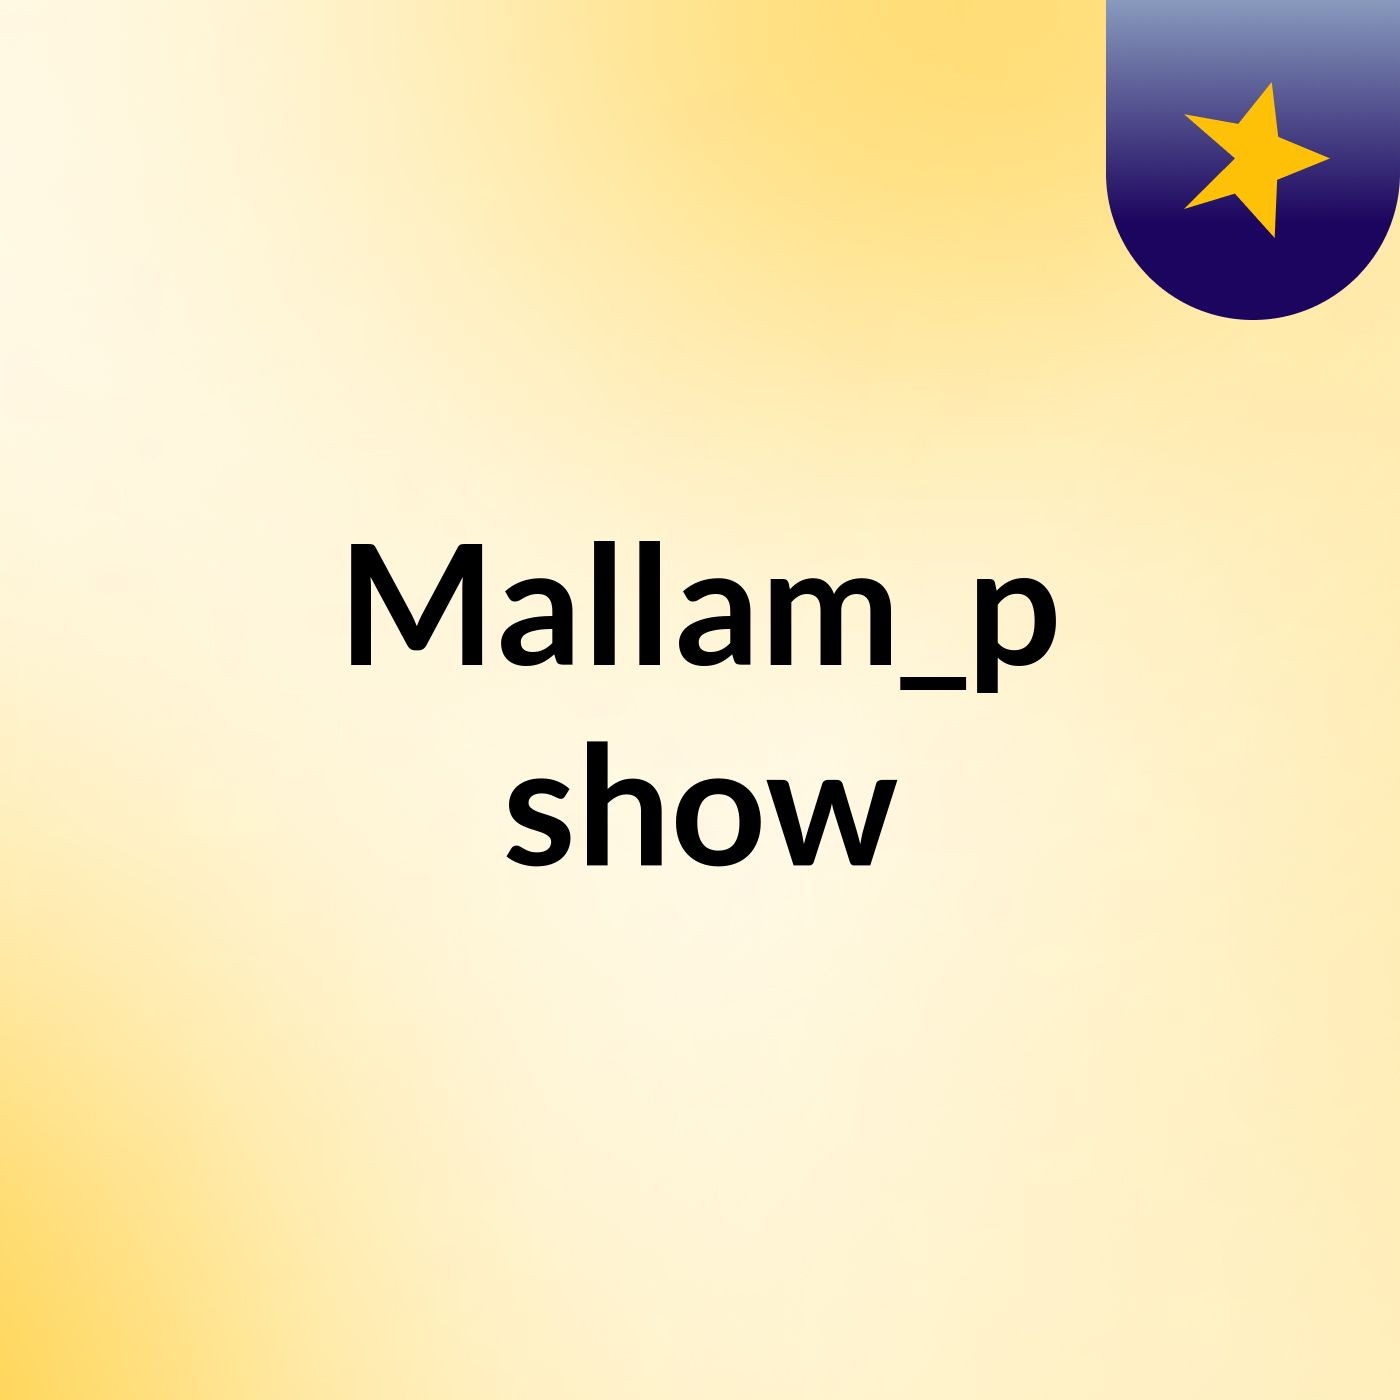 Mallam_p show